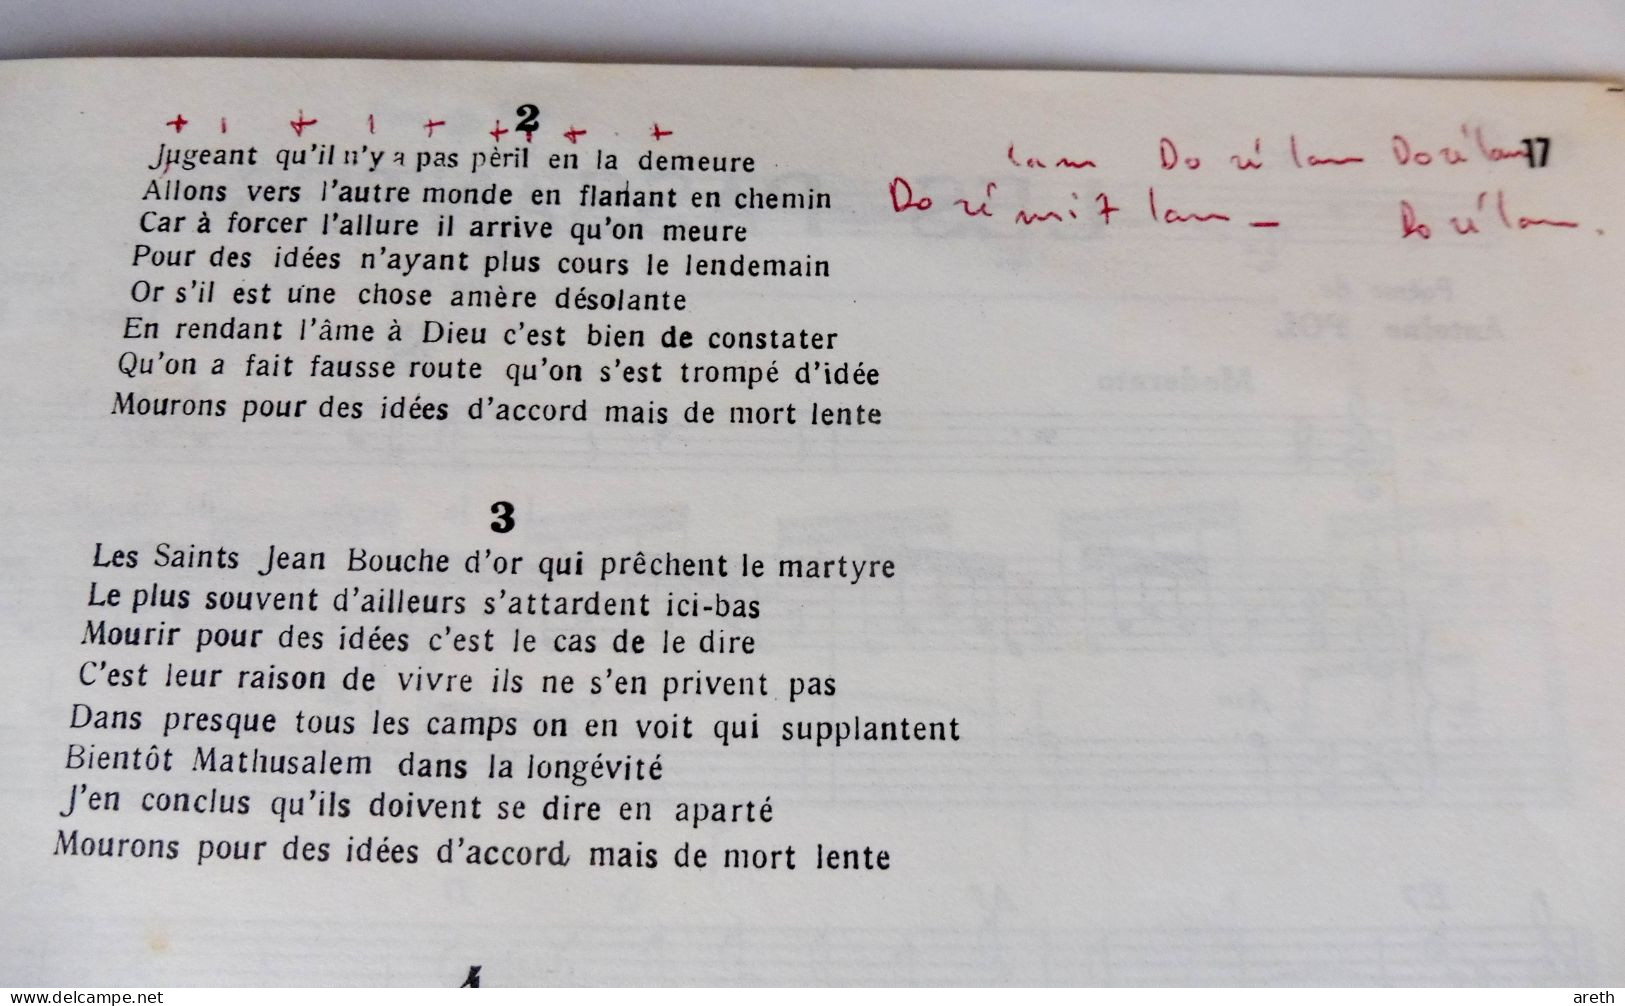 Georges Brassens - Album N° 13, 11 Titres ~ Paroles Et Musiques - Song Books